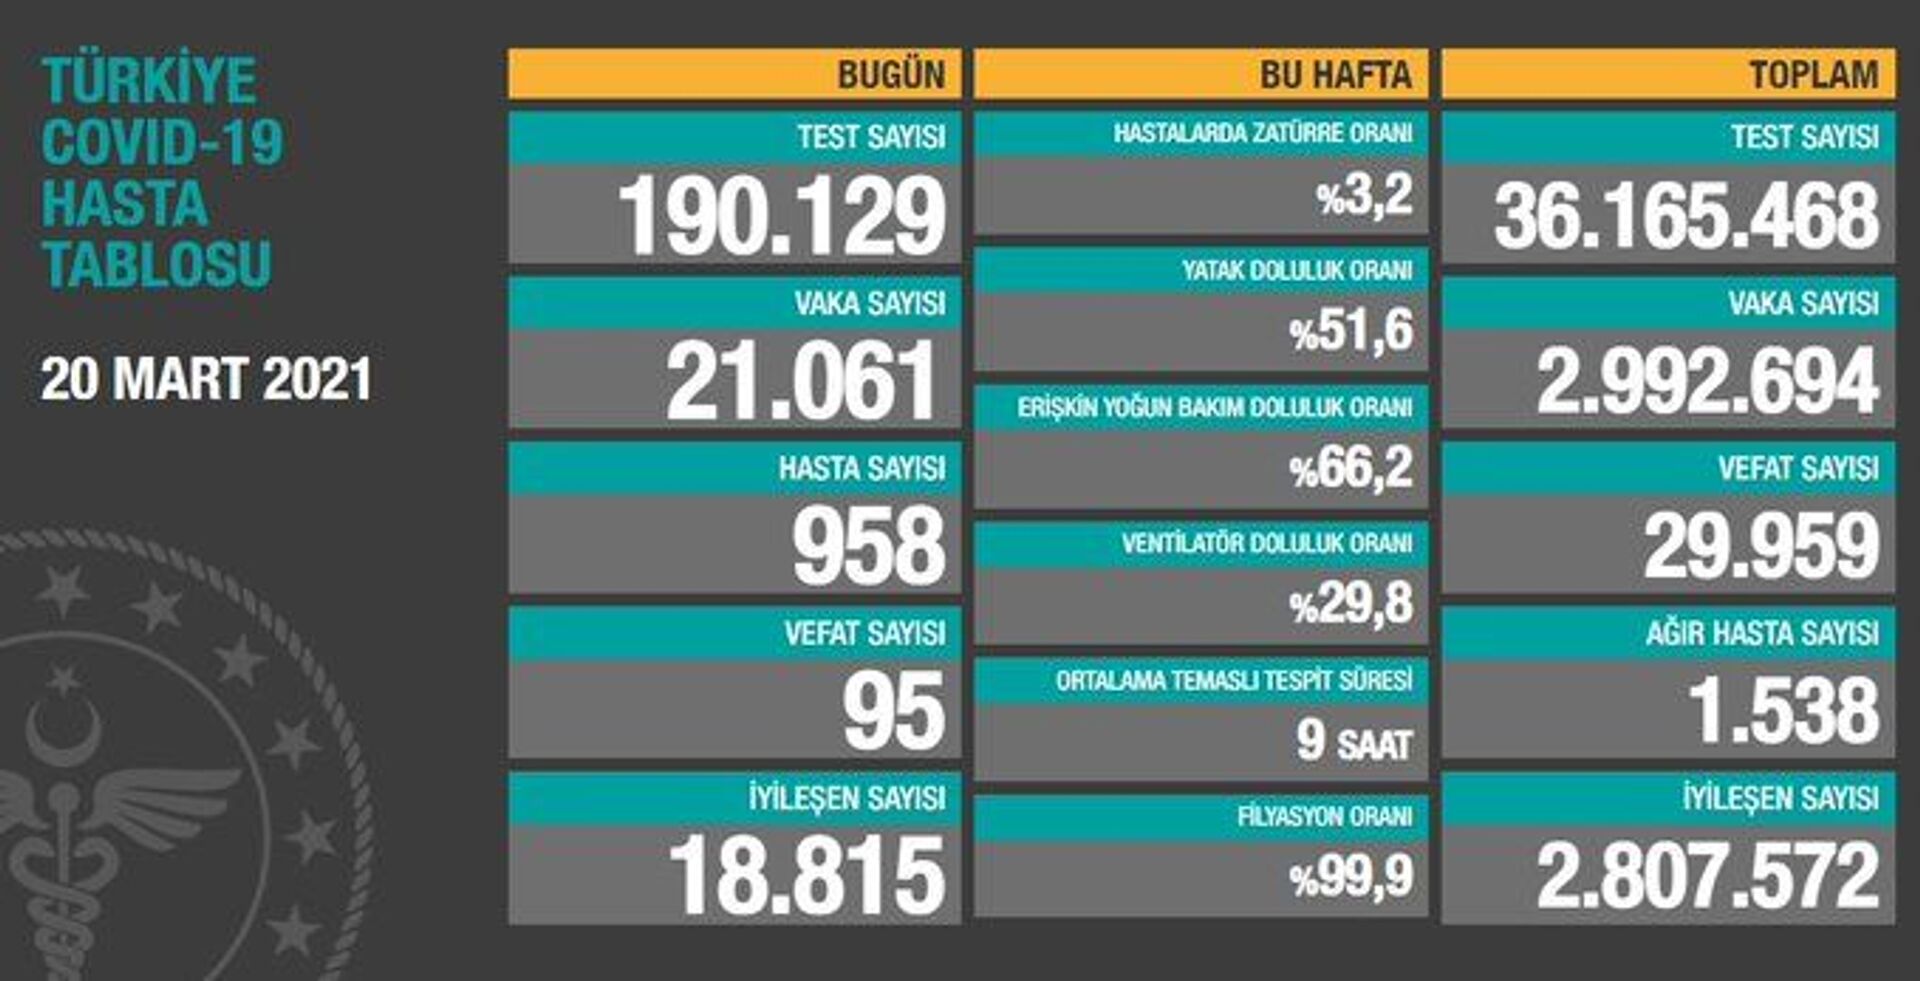 Türkiye'de son 24 saatte 21 bin 61 yeni vaka tespit edildi, 95 kişi hayatını kaybetti - Sputnik Türkiye, 1920, 20.03.2021